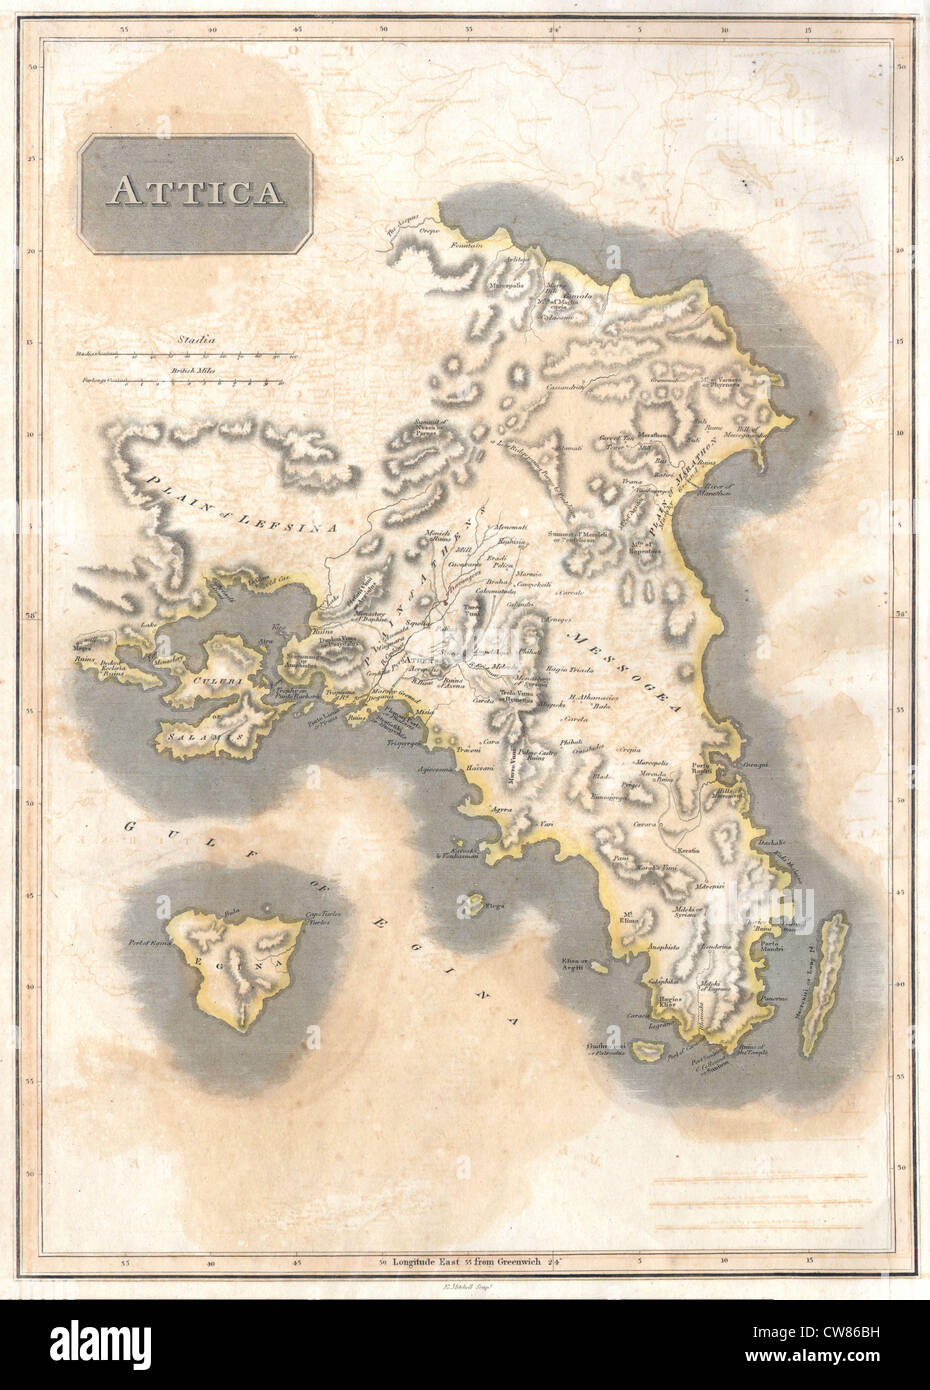 1815 Thomson Mapa de Attica (Anthens y alrededores) Grecia Foto de stock